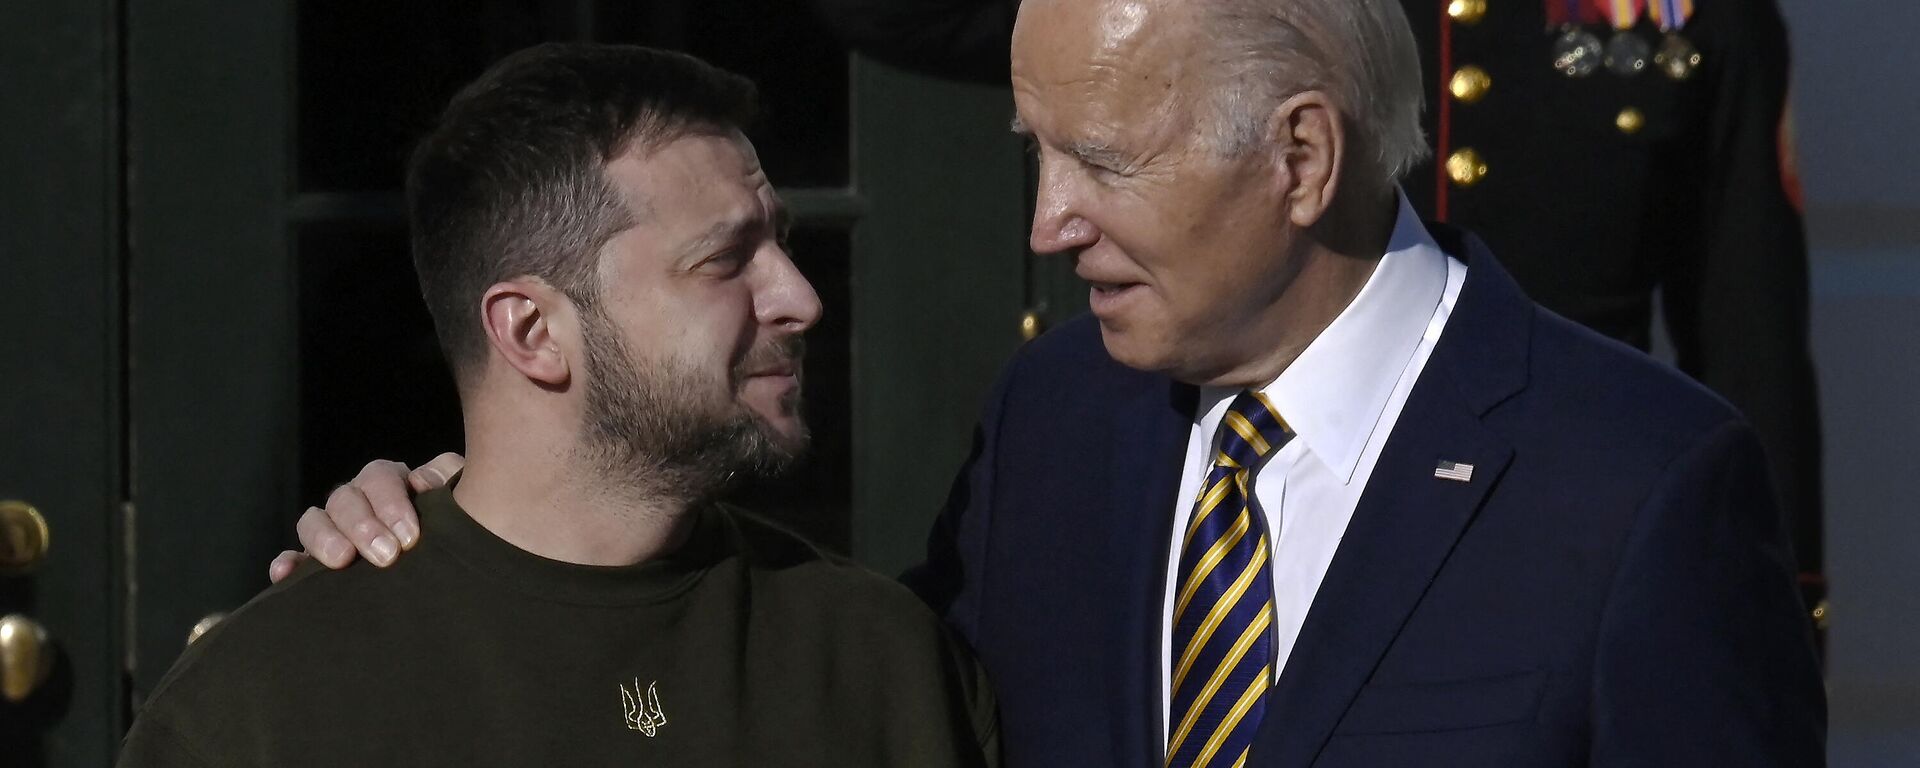 Tổng thống Hoa Kỳ Joe Biden chào đón Tổng thống Ukraina Vladimir Zelensky tại Bãi cỏ phía Nam Nhà Trắng ở Washington, ngày 21/12/2022 - Sputnik Việt Nam, 1920, 17.01.2023